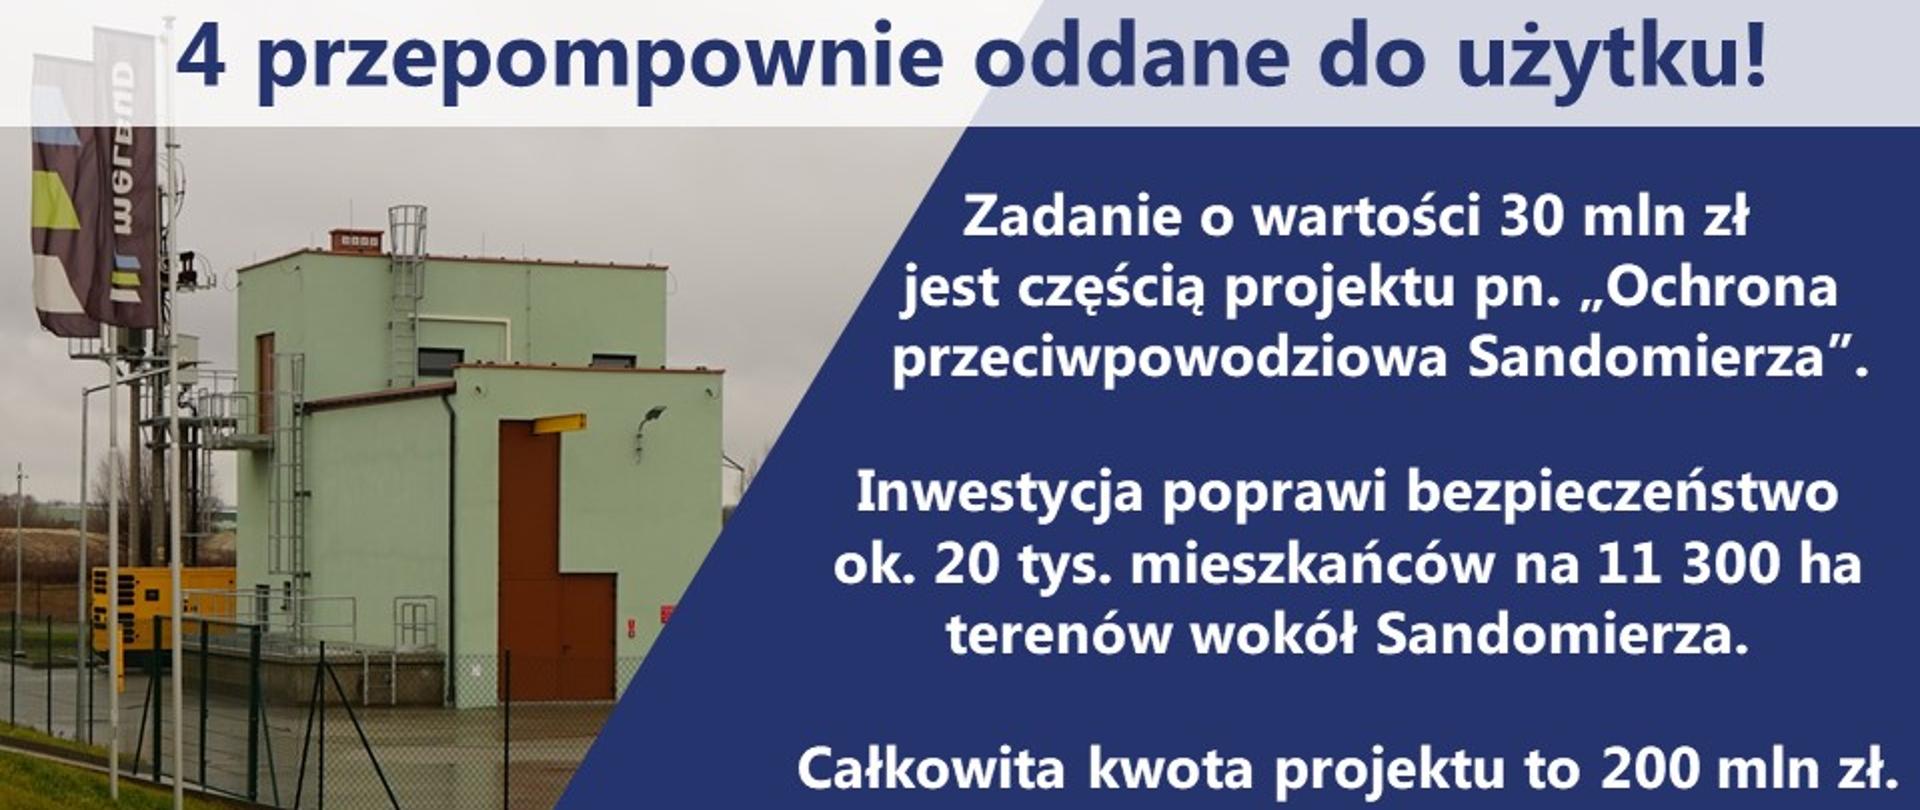 Lepsza ochrona przeciwpowodziowa Sandomierza